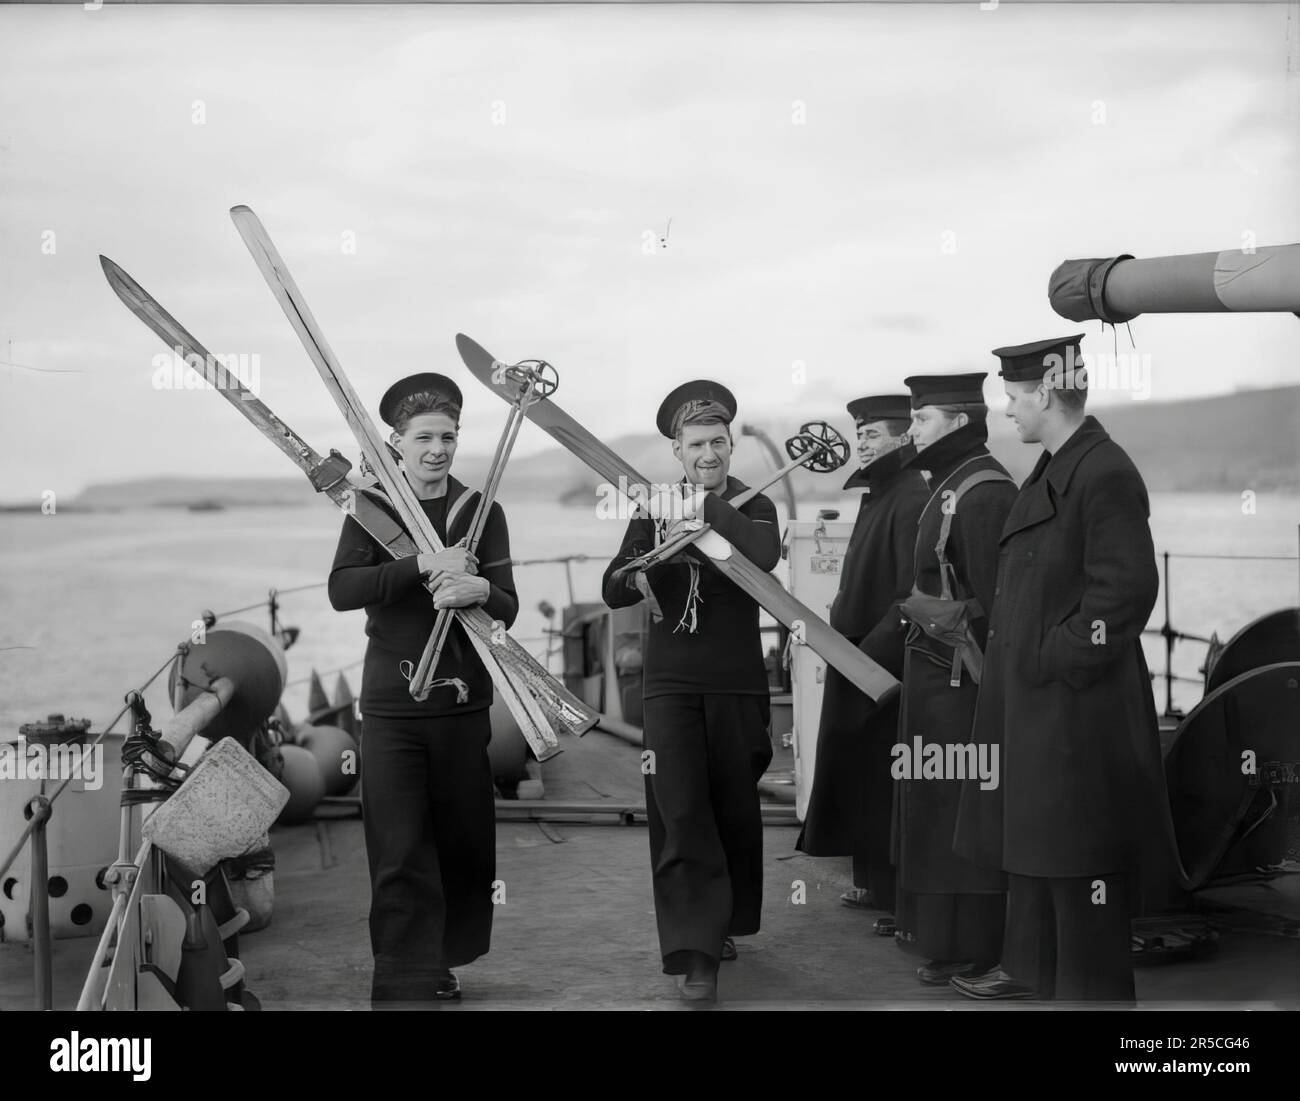 La Marine royale au cours de la Seconde Guerre mondiale, deux marins, tous deux ex-amateurs de sports d'hiver, ont la permission d'apporter leurs skis à bord de leur navire HMS ASHANTI Banque D'Images